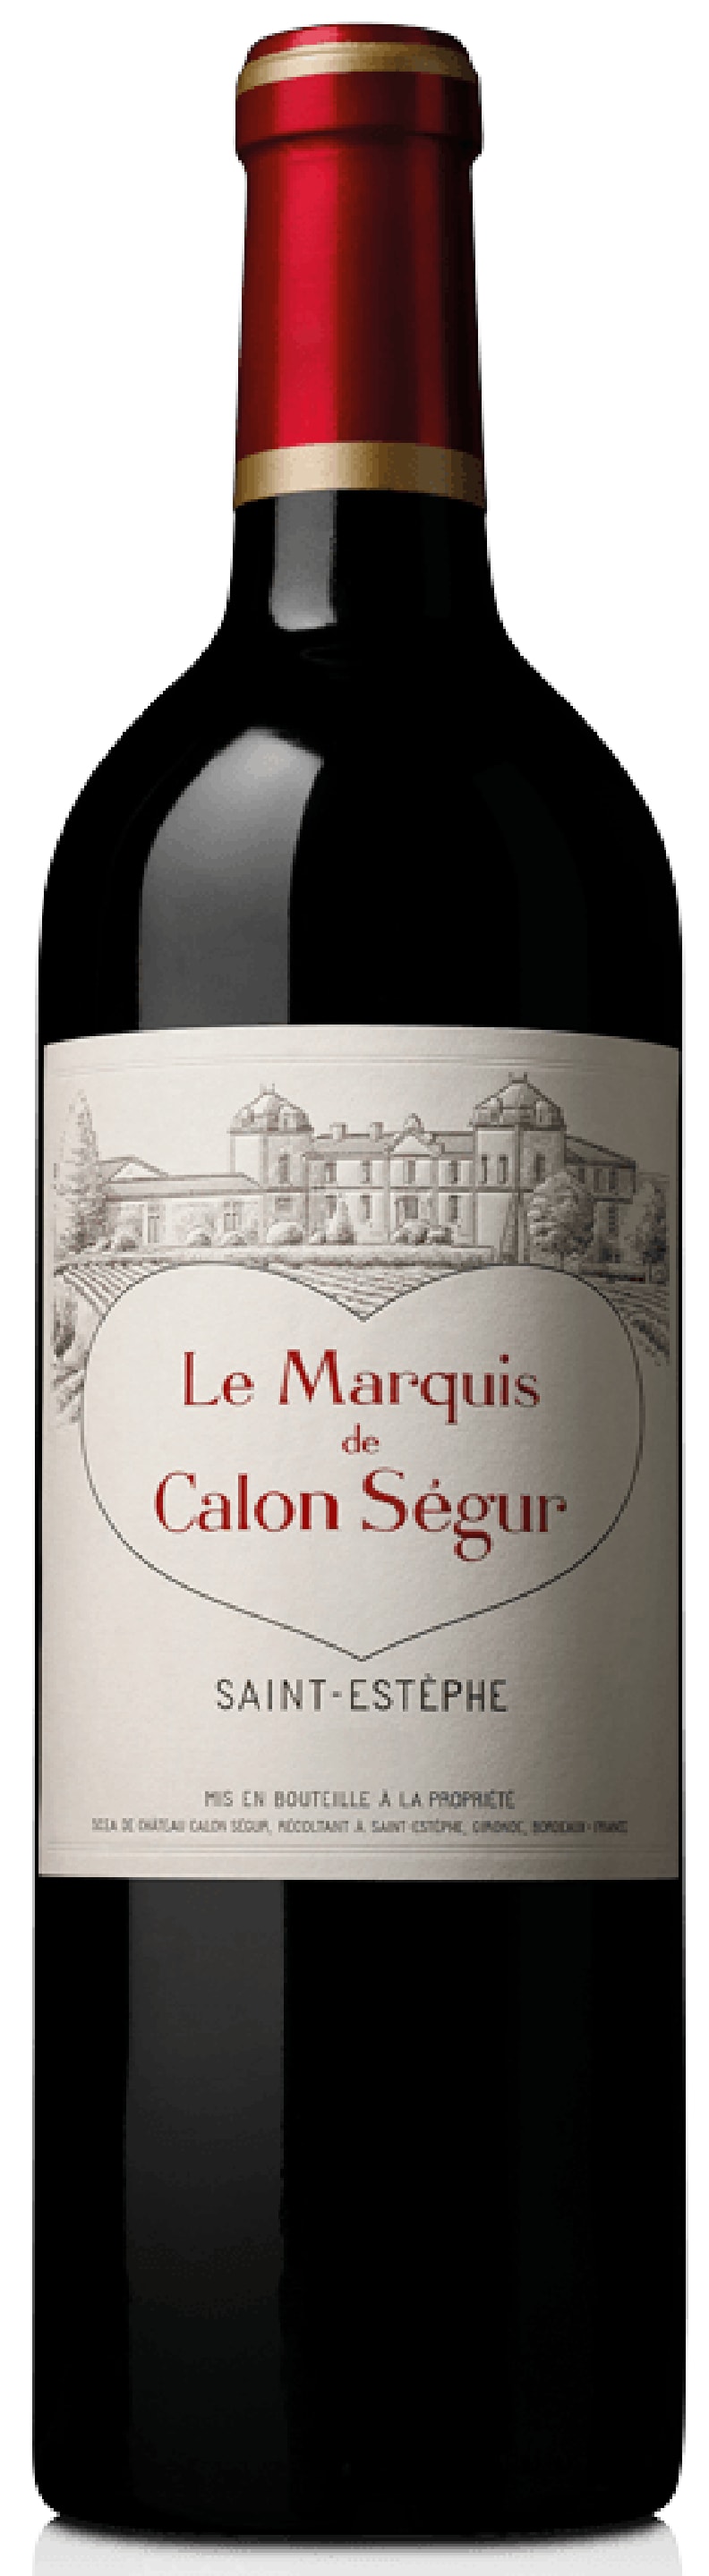 Chateau Calon Segur - Le Marquis de Calon Segur 2015 (750)